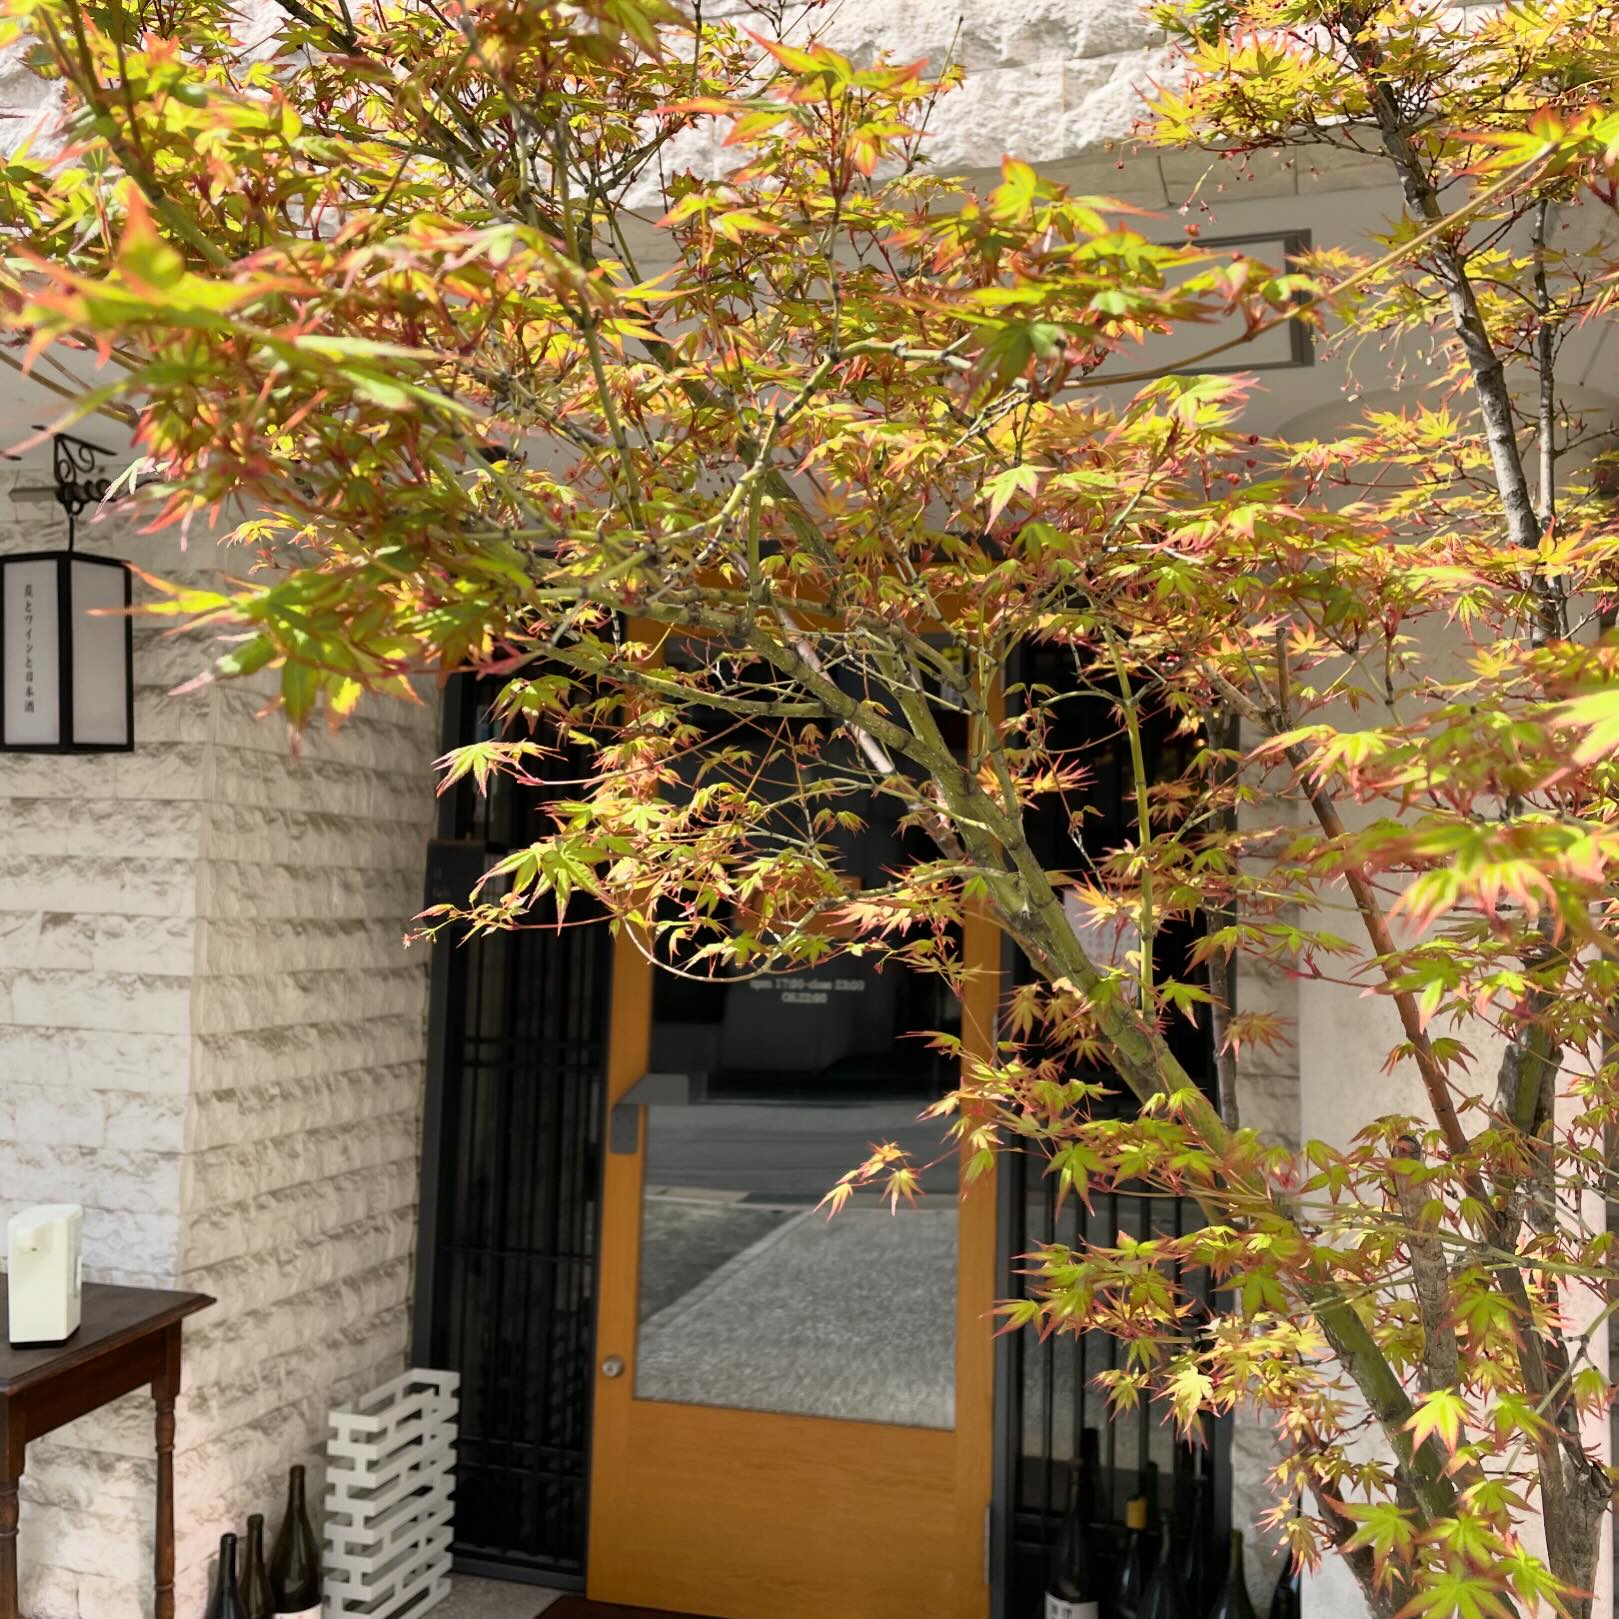 今日はいい天気になりましたねー店の前の紅葉も新芽が出て来て、春の息吹を感じます。今日4/5も、明日4/6もゆっくりしてそうです♪お電話お待ちしてます092-713-4550@ilfaitsoif #イルフェソワフ #ワイン#日本酒 #薬院#警固#焼き鳥#ナチュラルワイン#ヴァンナチュール#自然派ワイン